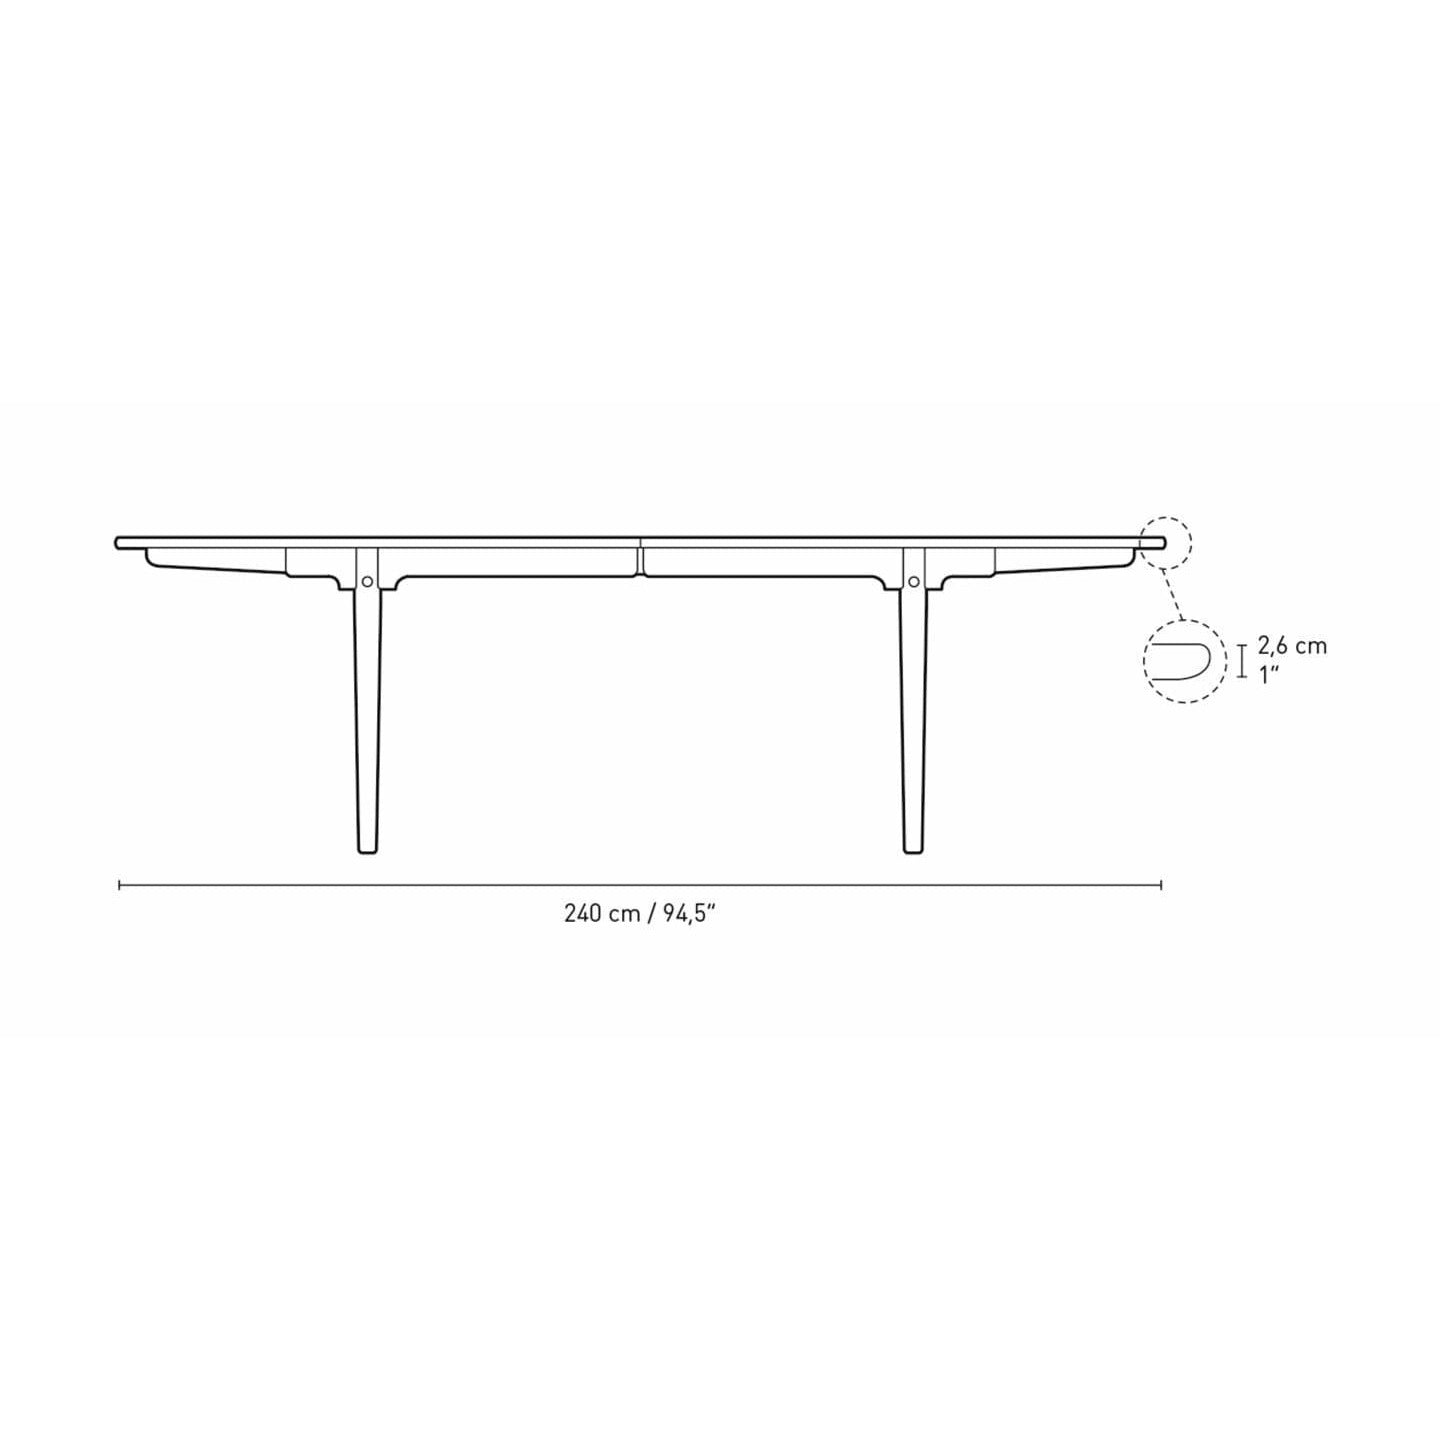 Jídelní stůl Carl Hansen CH339 navržený pro 4 vytahovací talíře, ořechový ořech